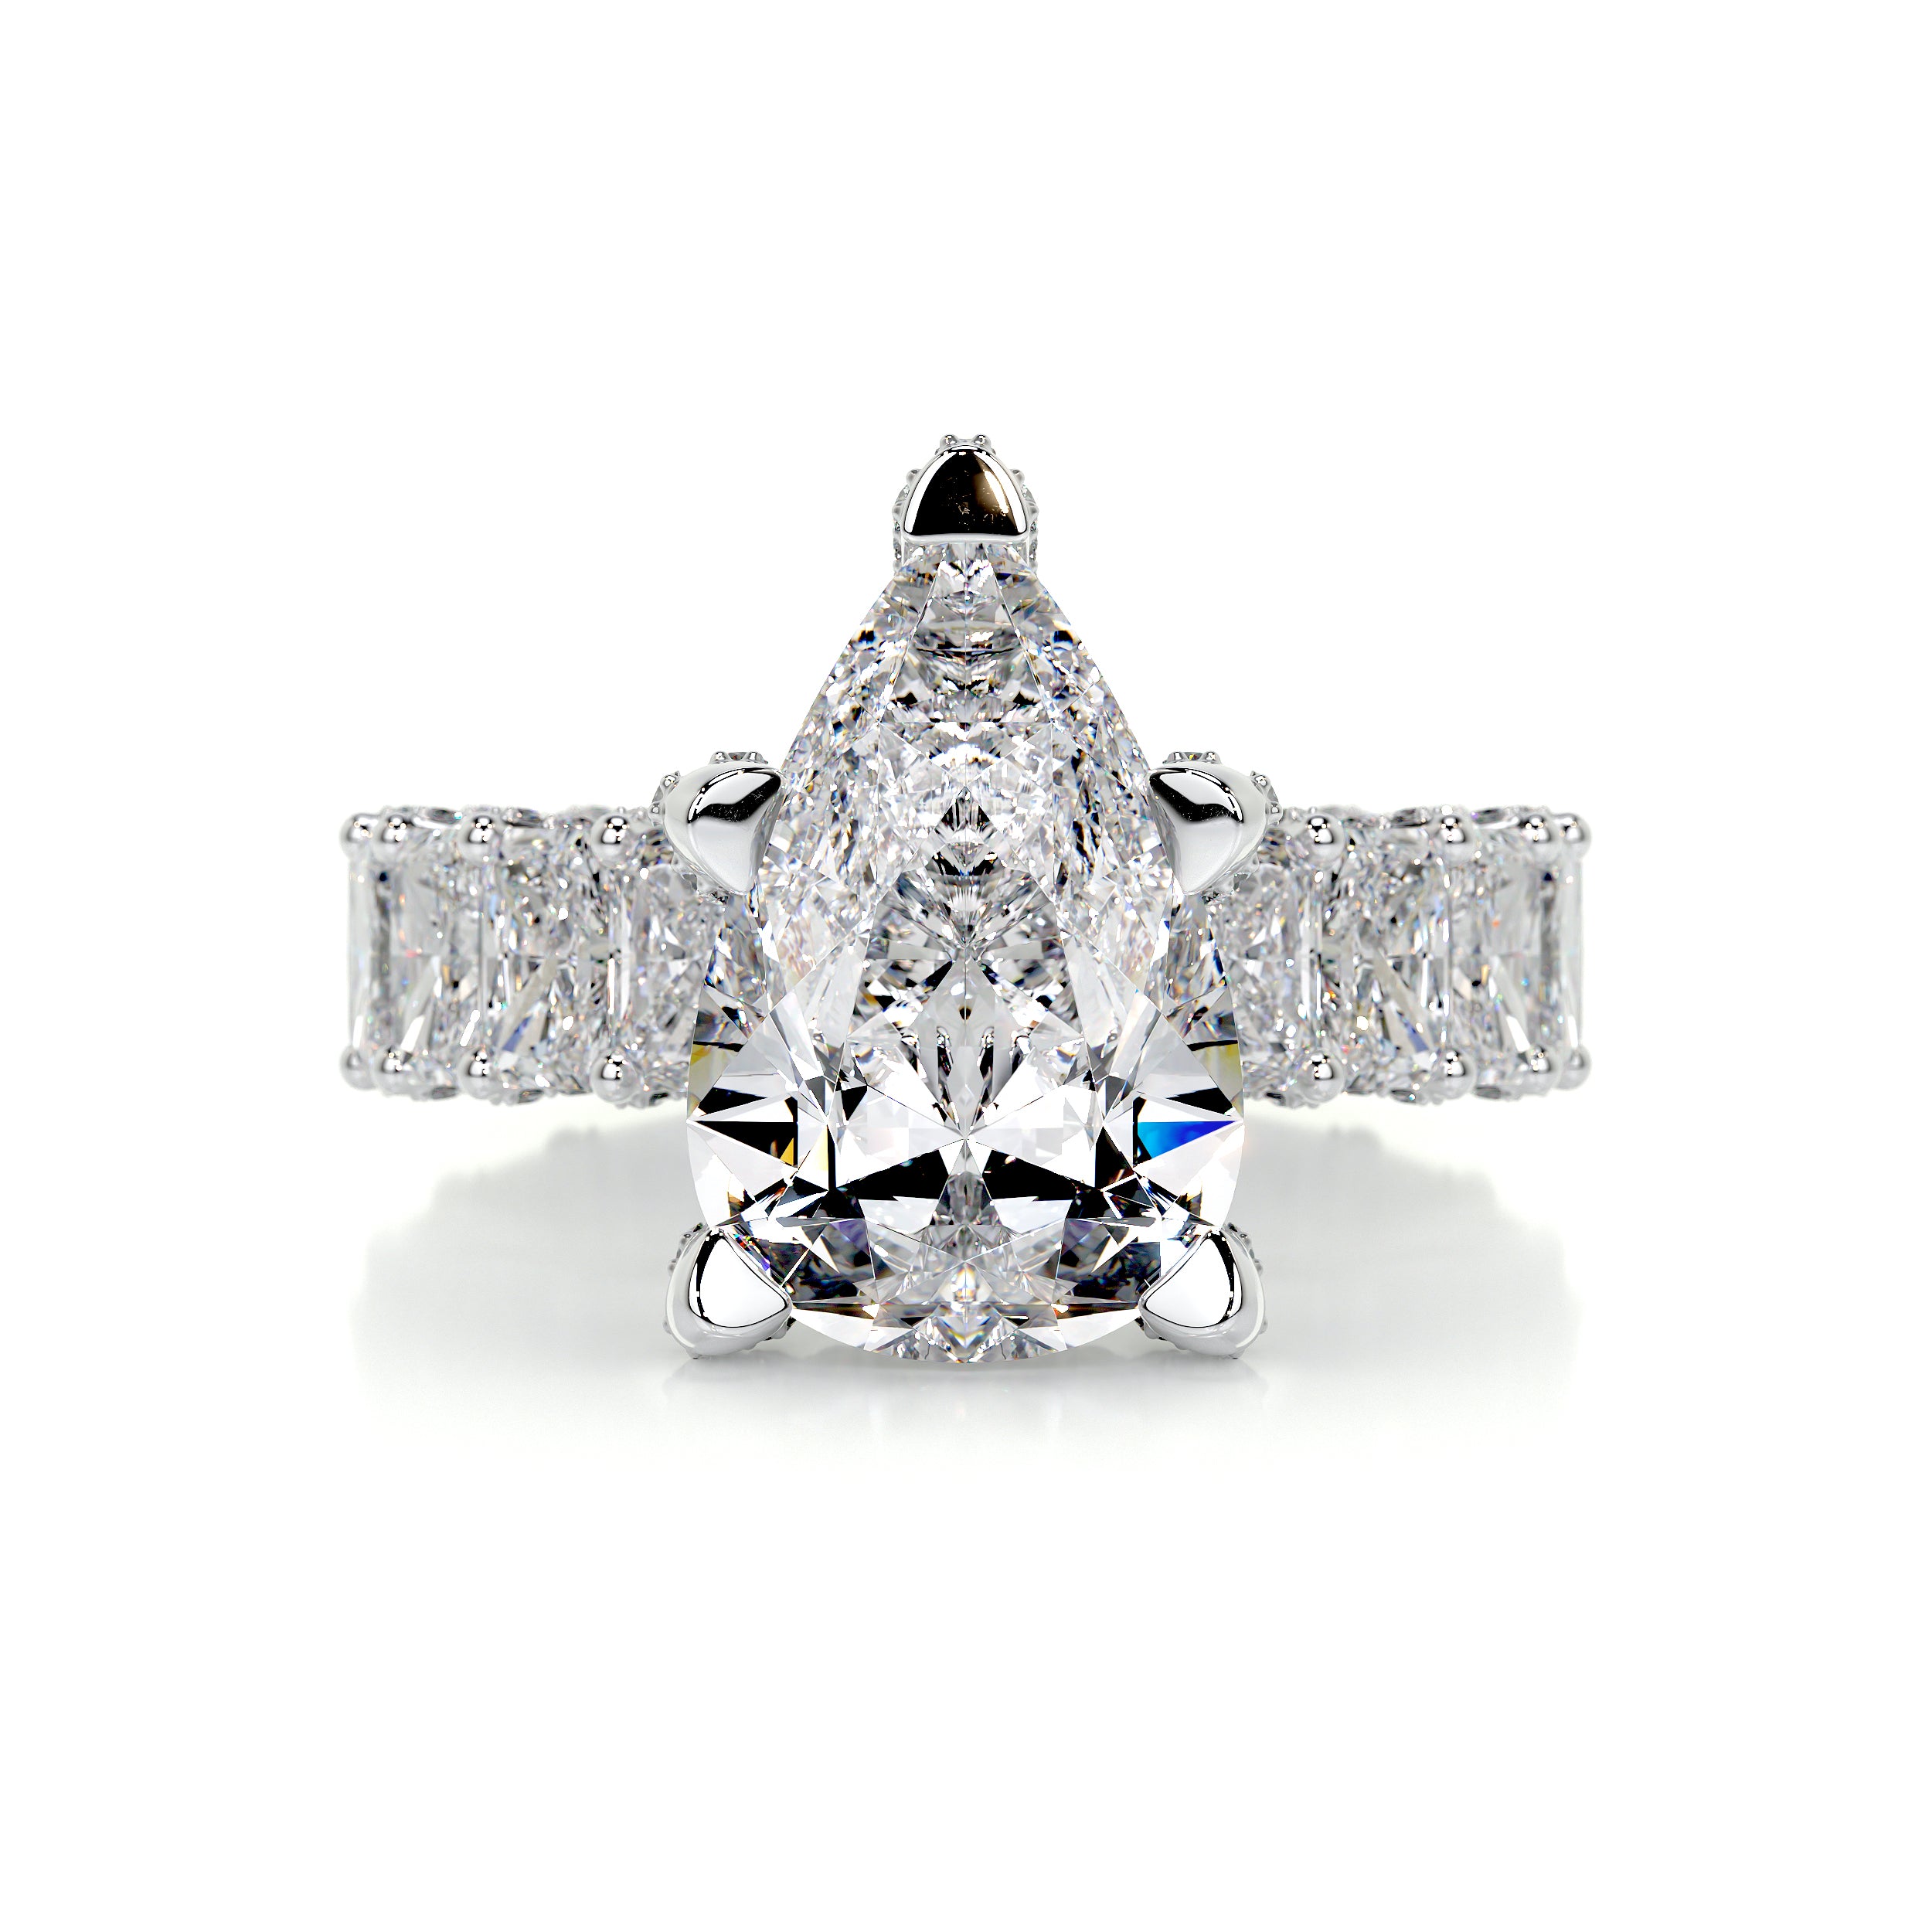 Arabella Diamond Engagement Ring   (8 Carat) -Platinum